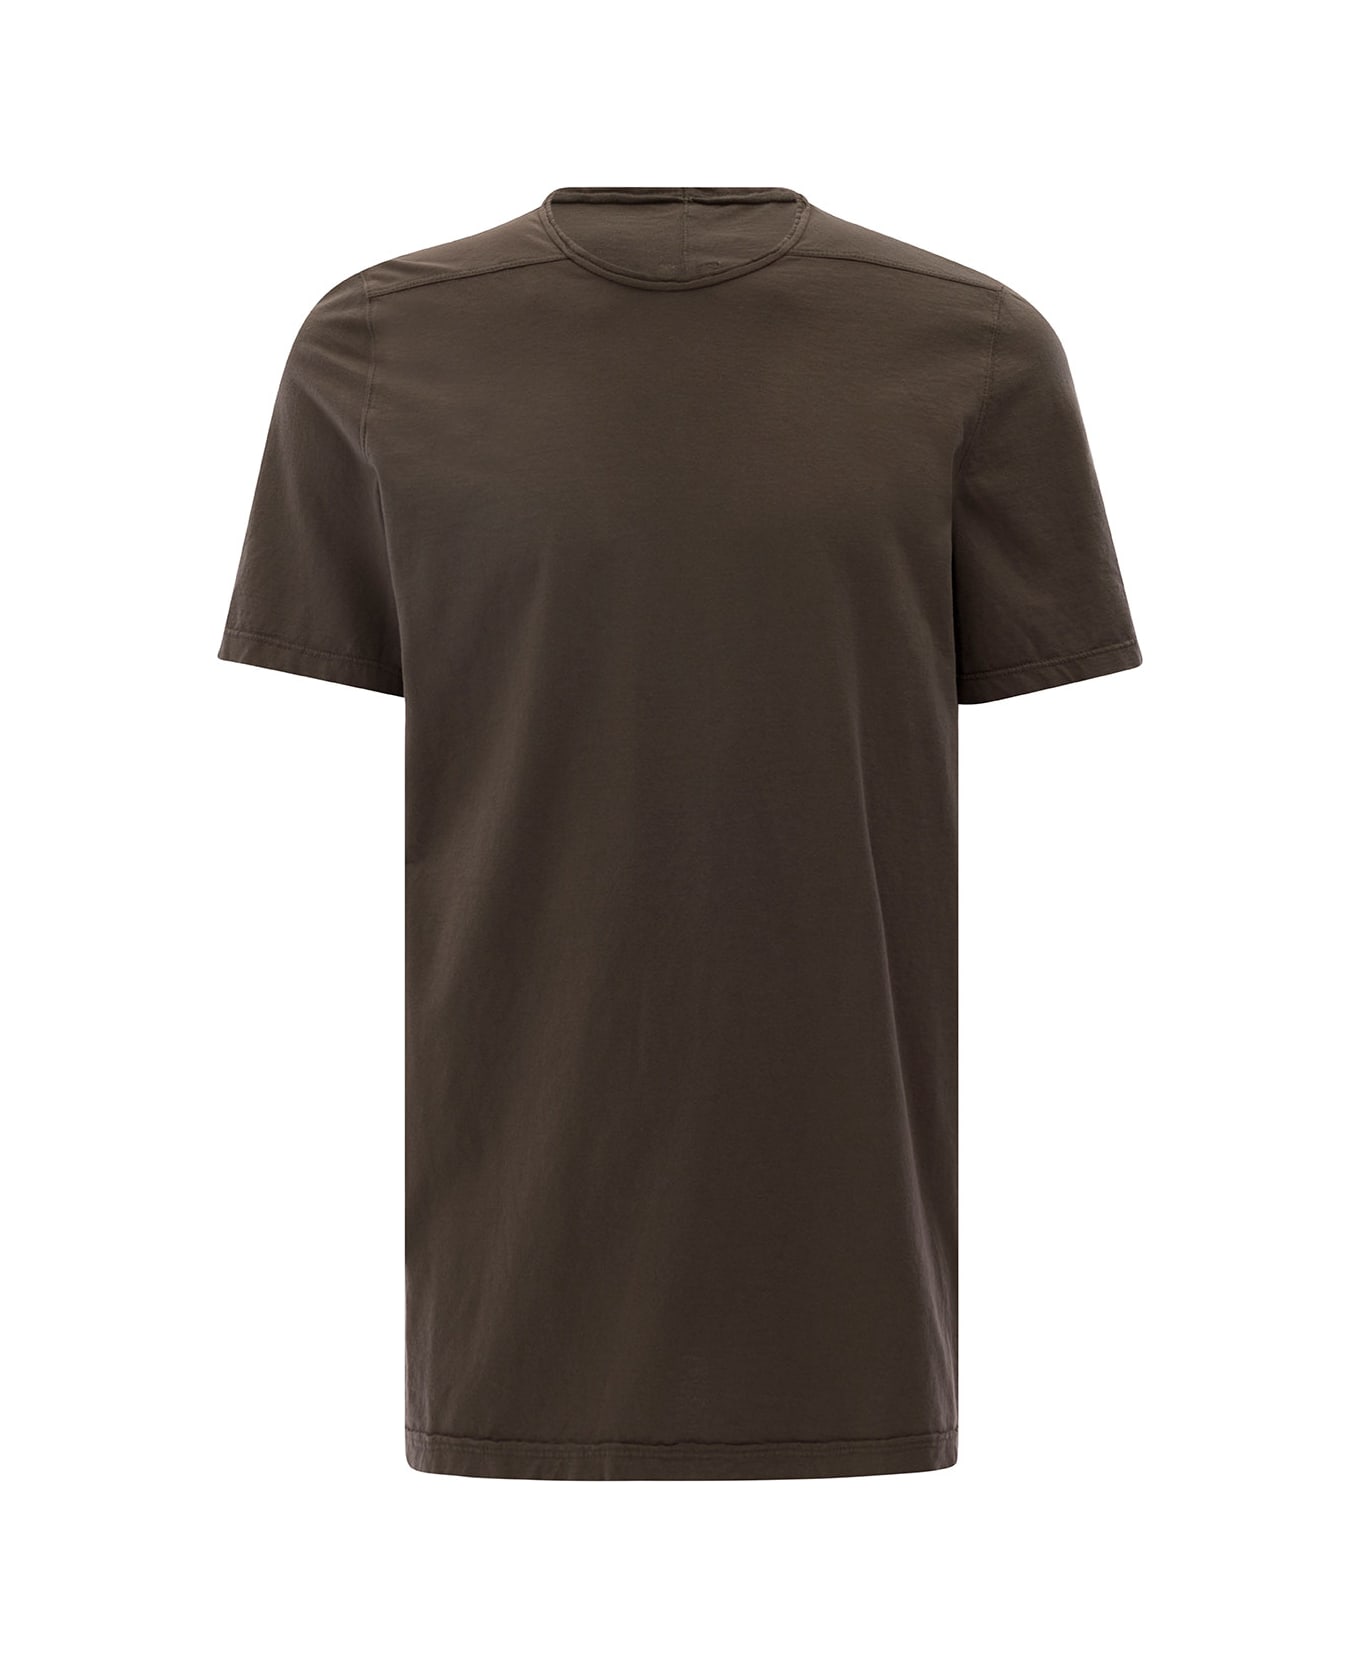 DRKSHDW Brown Round Neck T-shirt In Cotton Man - Brown シャツ